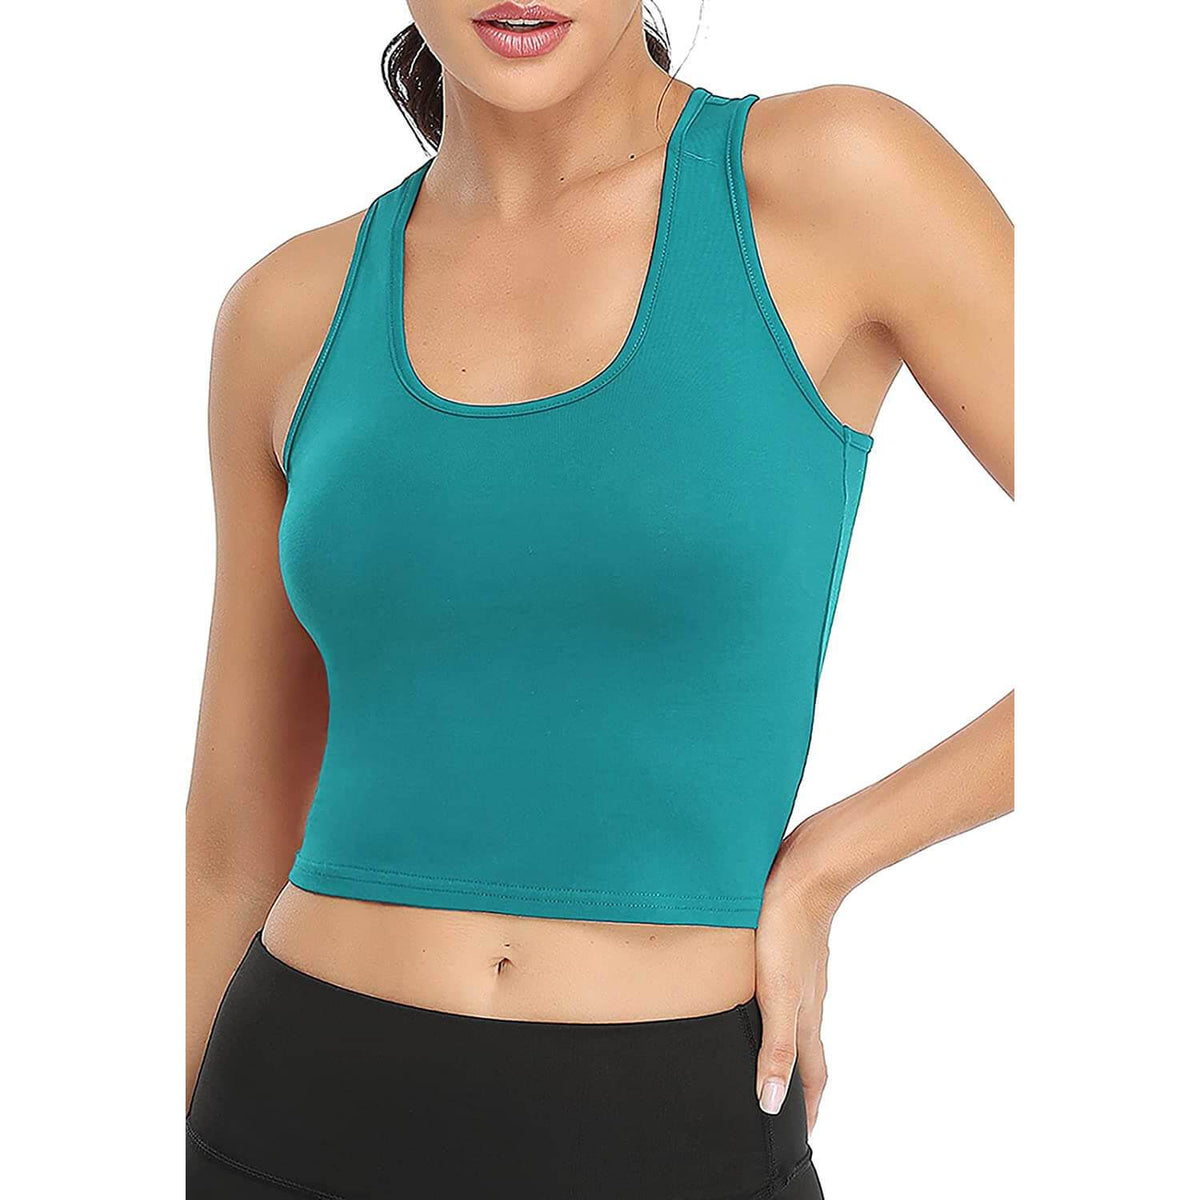 Women's Sports Crop Tank Tops Sleeveless Shirt